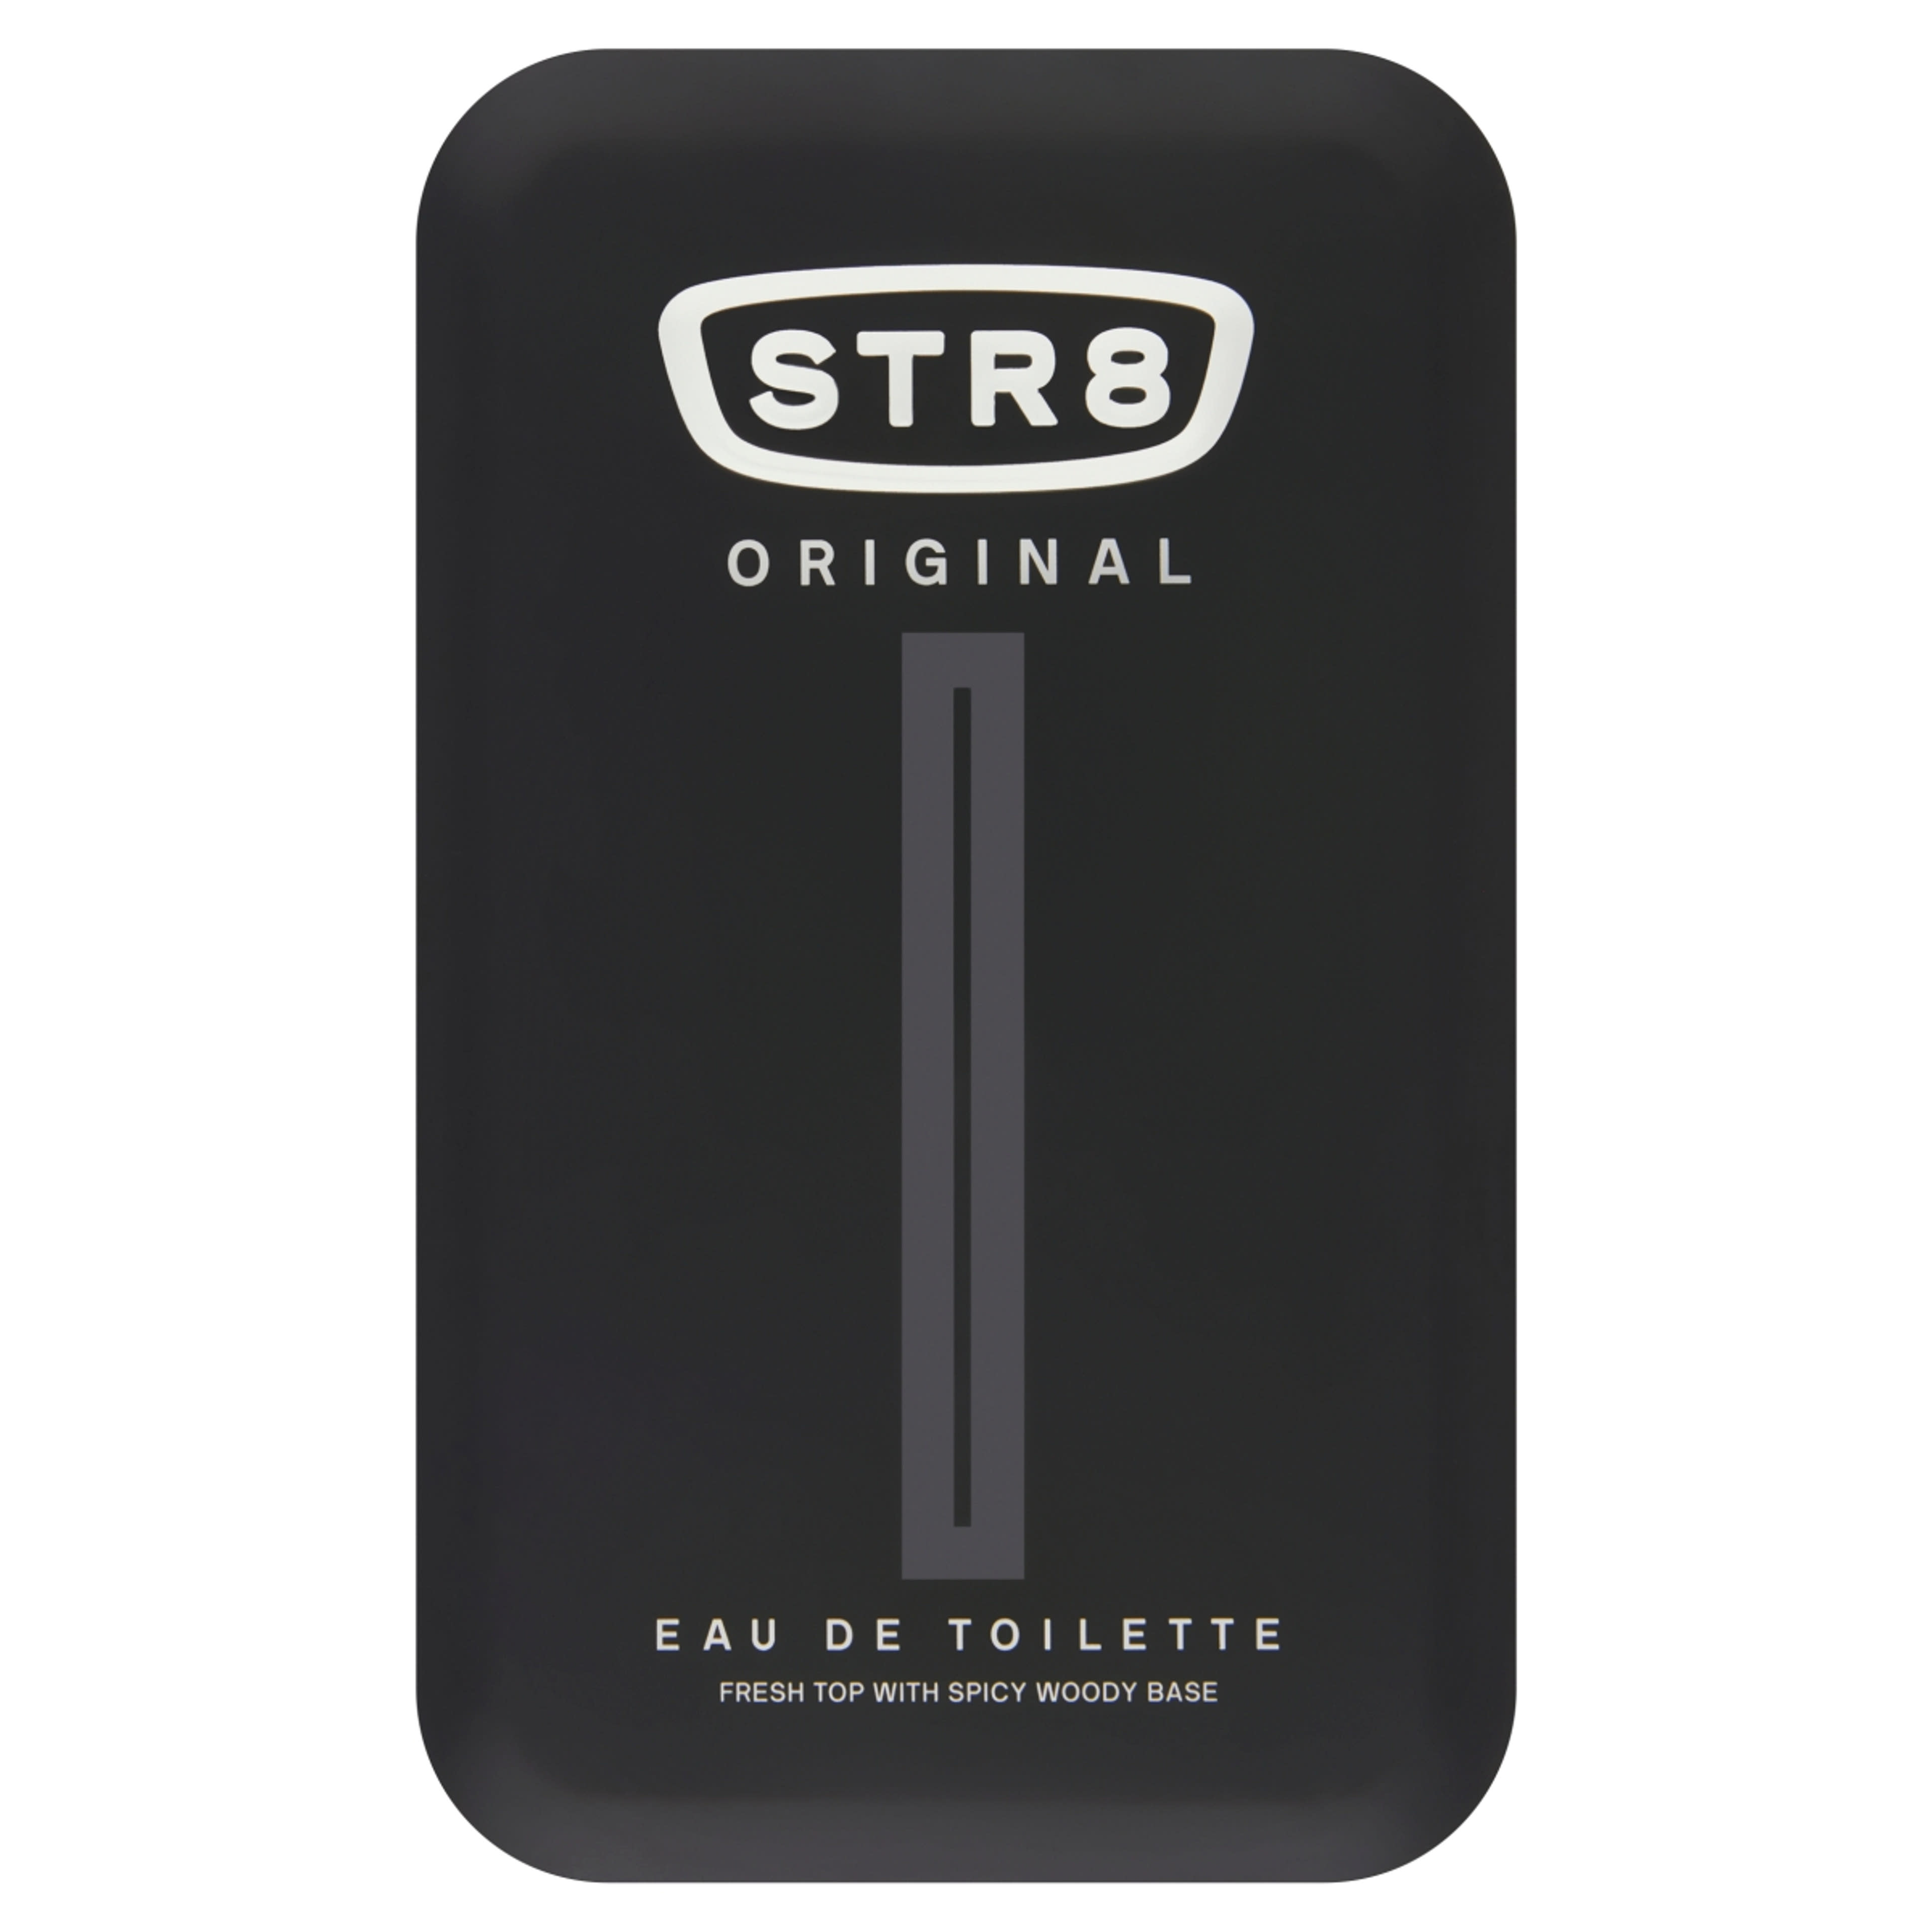 STR8 Original eau de toilette - 100 ml-1